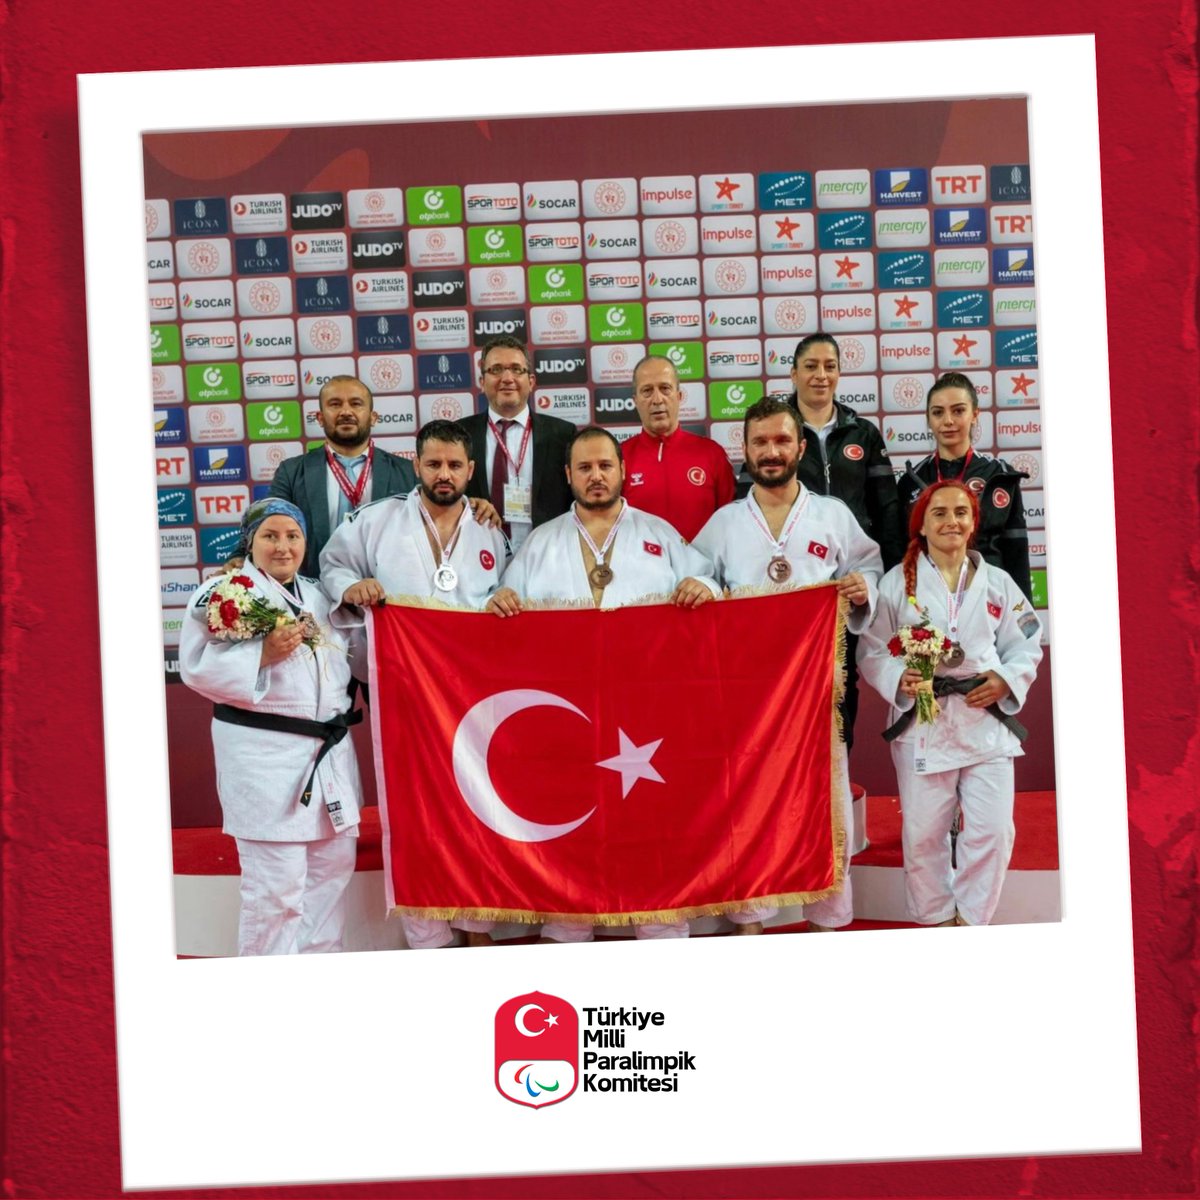 Antalya'da düzenlenen IBSA Judo Grand Prix'de temsilcilerimiz 7 madalya kazanarak hem bizleri gururlandırdılar hem de Paris 2024 Paralimpik Oyunları'na kota puanı elde ettiler. Judocularımızın bu muhteşem başarısını kutluyor, hepsini tebrik ediyoruz! 🇹🇷 🥇 Ecem Taşın Çavdar 🥈